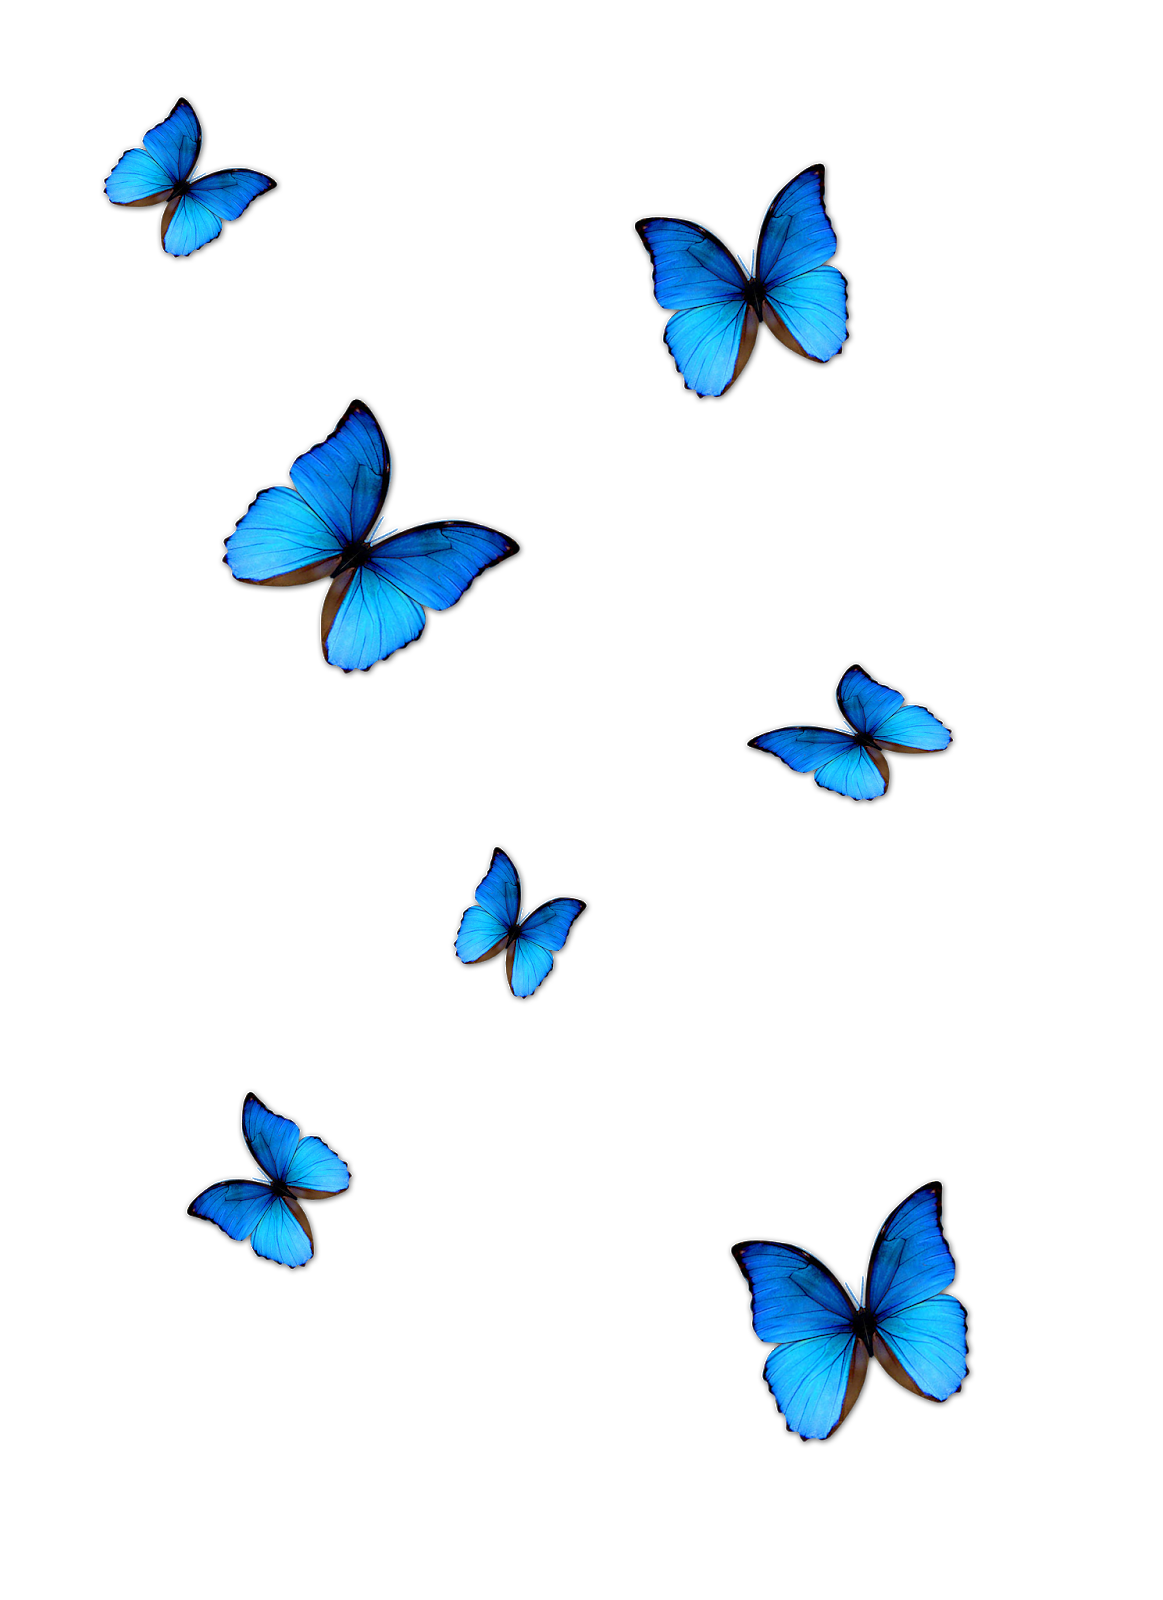 Hãy chiêm ngưỡng hình ảnh PNG bướm xanh tuyệt đẹp, mang đến cho bạn một trải nghiệm tuyệt vời về sự thăng hoa của thiên nhiên và những sinh vật được tạo nên bởi sự đa dạng và tinh tế. Hãy để tâm hồn thư giãn, cùng ngắm nhìn những hình ảnh đầy màu sắc này.